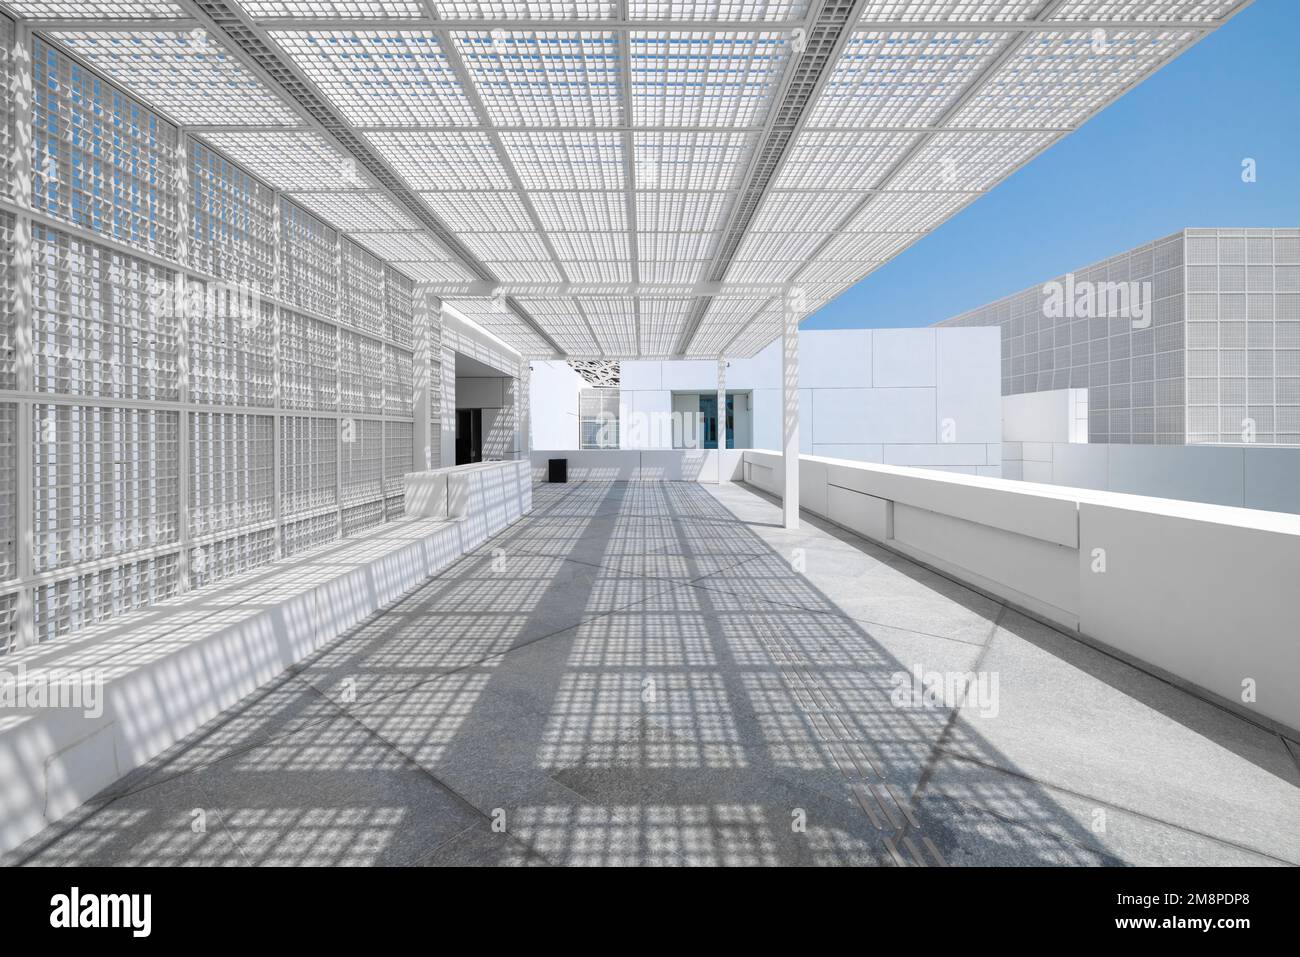 L'entrée moderne du musée du Louvre d'Abu Dhabi, avec une passerelle en marbre blanc et une grille géométrique carrée en métal pour l'ombre Banque D'Images